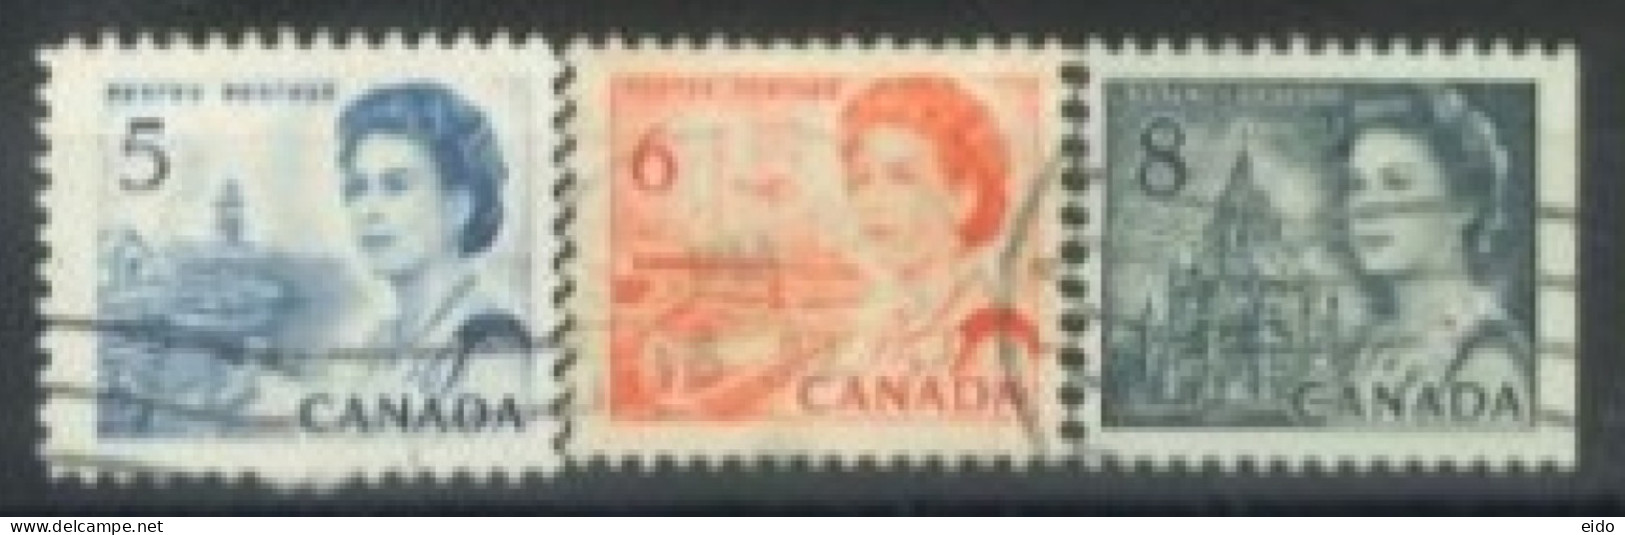 CANADA - 1967, QUEEN ELIZABETH II NORTHERN LIGHTS & DOG TEAM STAMPS SET OF 3, USED. - Oblitérés